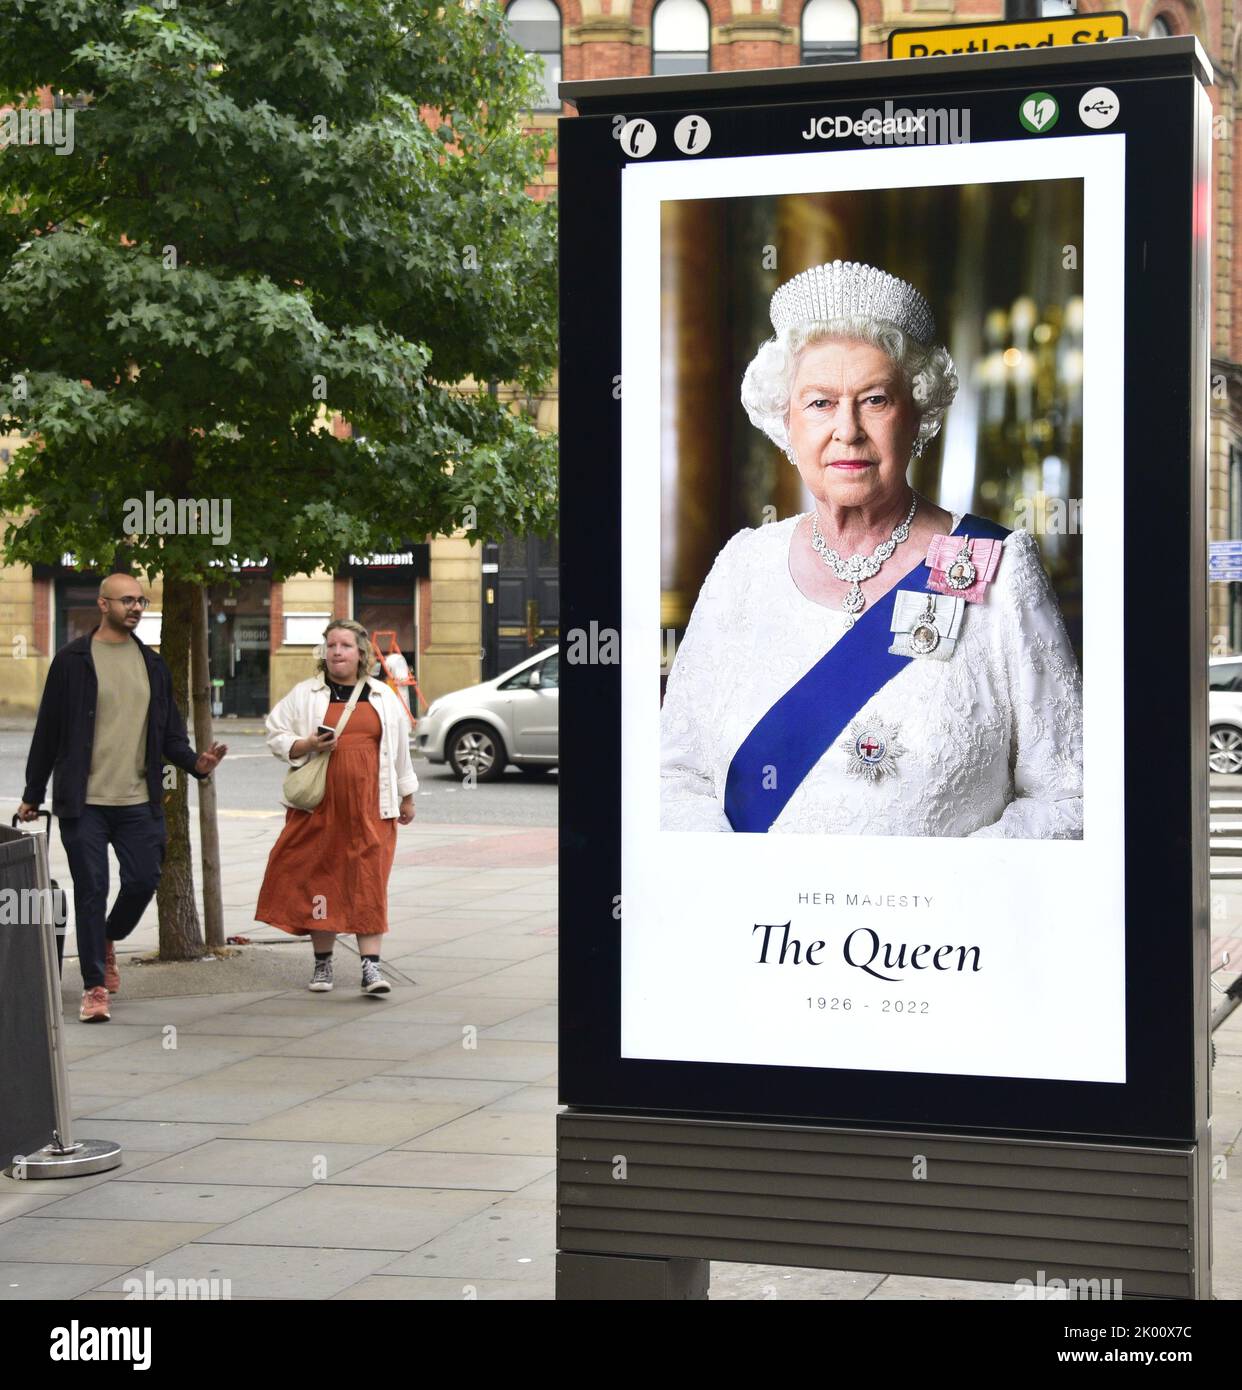 Manchester, Großbritannien, 9.. September 2022. Die Menschen gehen in Manchester, Großbritannien, an elektronischen Werbetafeln vorbei, auf denen Ihre Majestät, Königin Elizabeth II, zu sehen ist. Ihre Majestät, die Königin, starb im Alter von 96 Jahren am 8.. 2022. Der Stadtrat von Manchester hat auf seiner Website gesagt, dass die Stadt Manchester die offizielle 10-tägige Trauerperiode beobachten wird und dass: „Die Bewohner könnten Blumen zum Gedenken an den Tod Ihrer Majestät legen wollen. Am St. Ann's Square können Sie Blumen legen. Quelle: Terry Waller/Alamy Live News Stockfoto